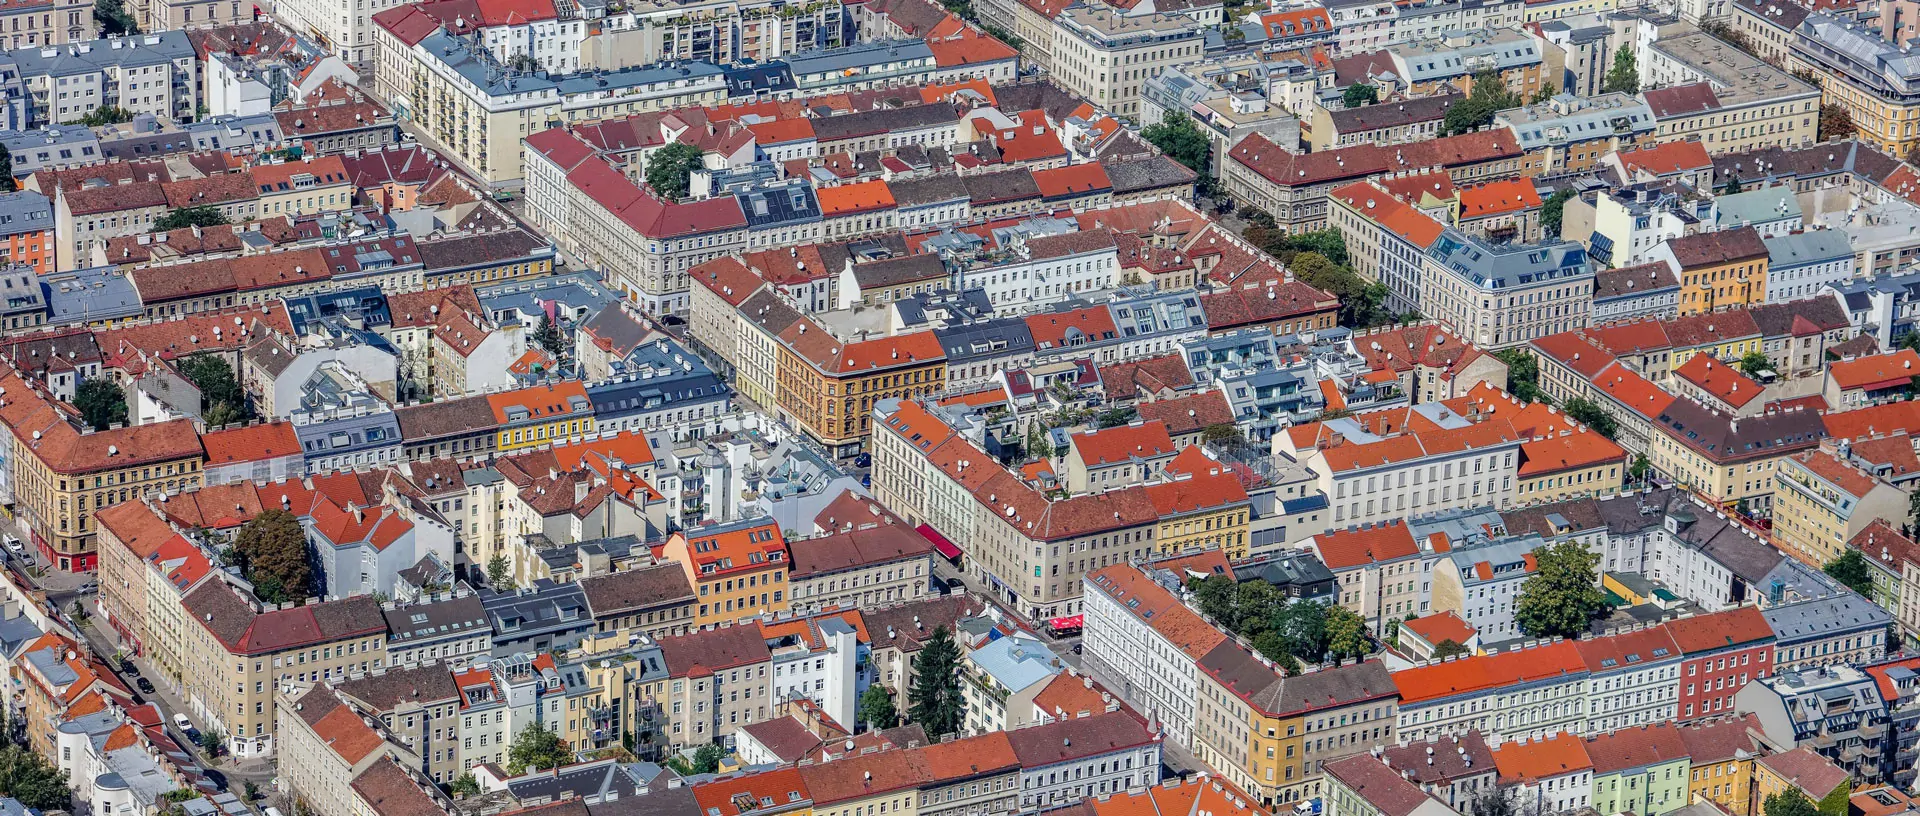 Die Gentrifizierung in Wien ist einer neuen Studie der ÖAW zufolge ein geringeres Problem als lange gedacht. © Stadt Wien/Christian Fürthner 2019